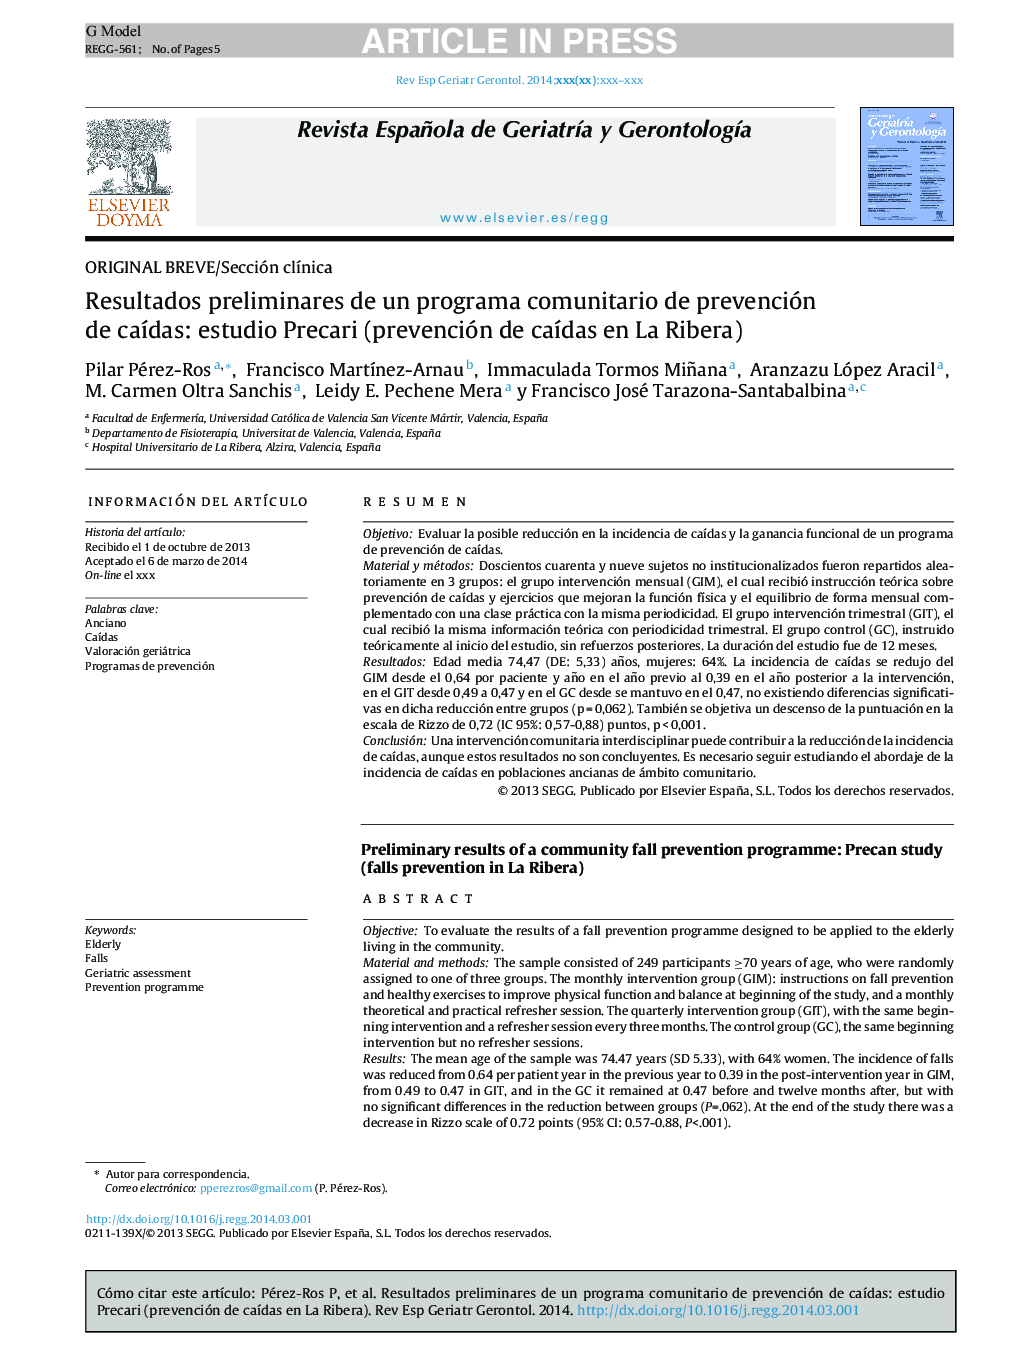 Resultados preliminares de un programa comunitario de prevención de caÃ­das: estudio Precari (prevención de caÃ­das en La Ribera)